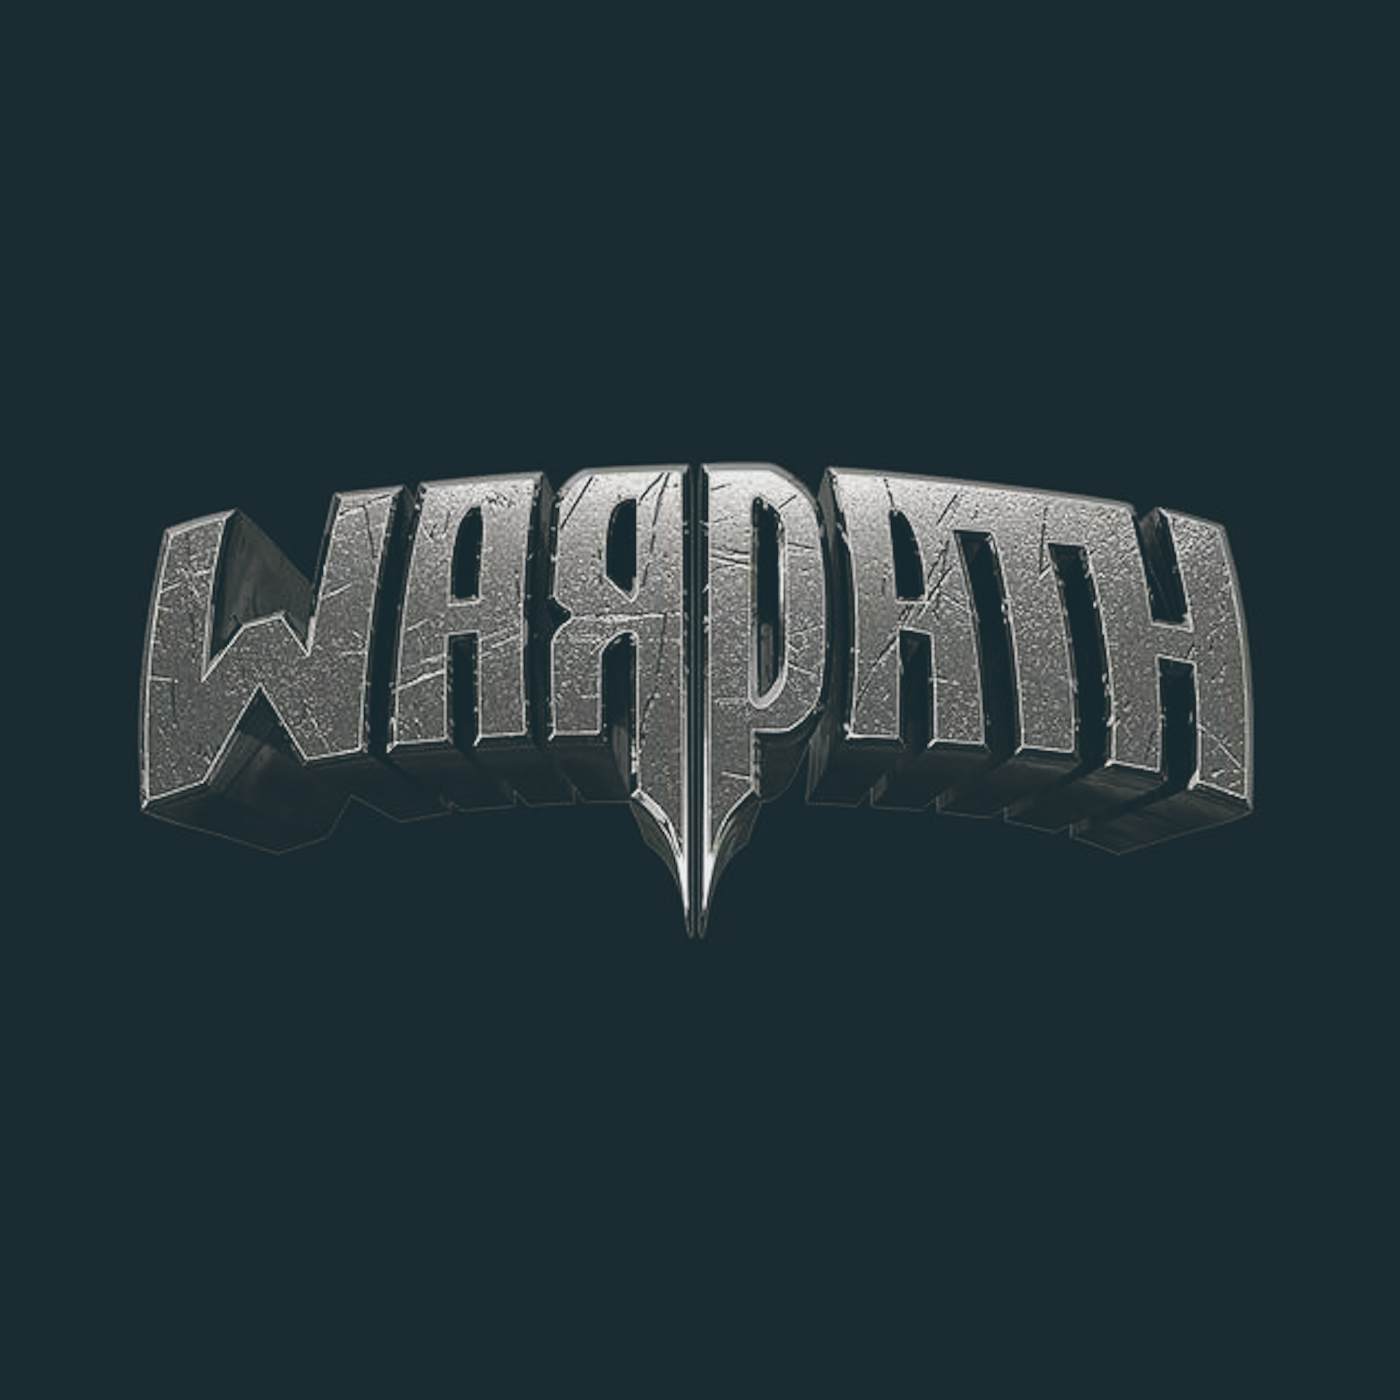 Warpath